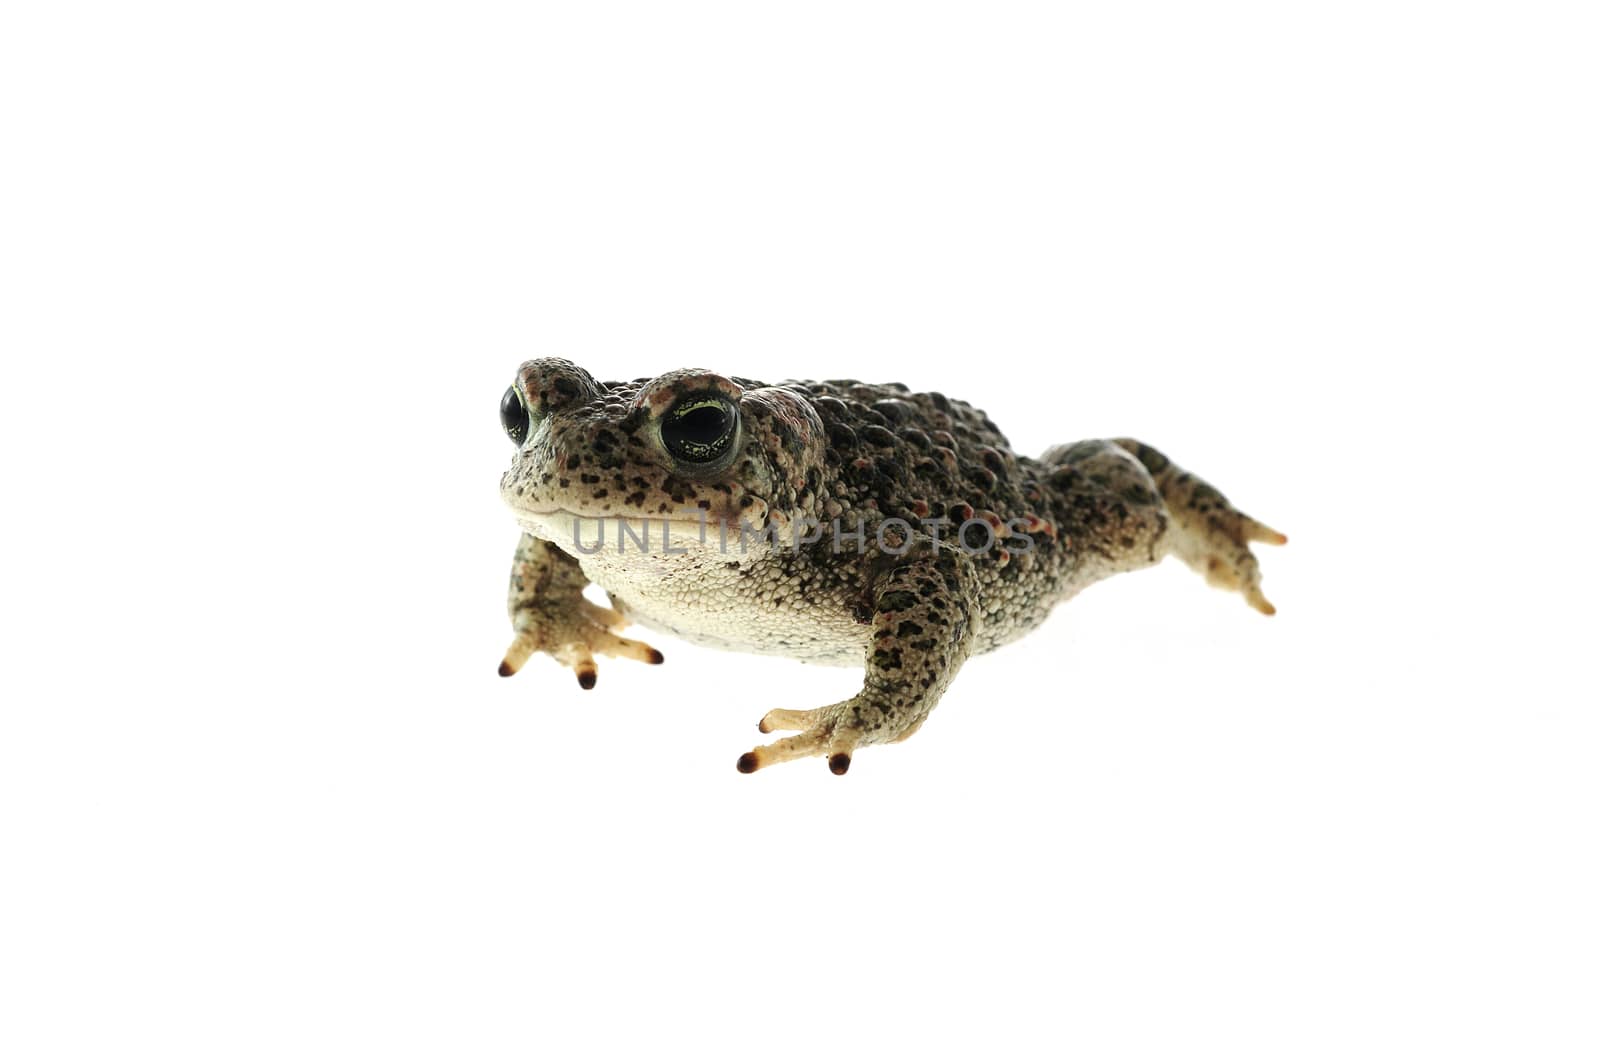 Natterjack toad (Epidalea calamita) with White background by jalonsohu@gmail.com